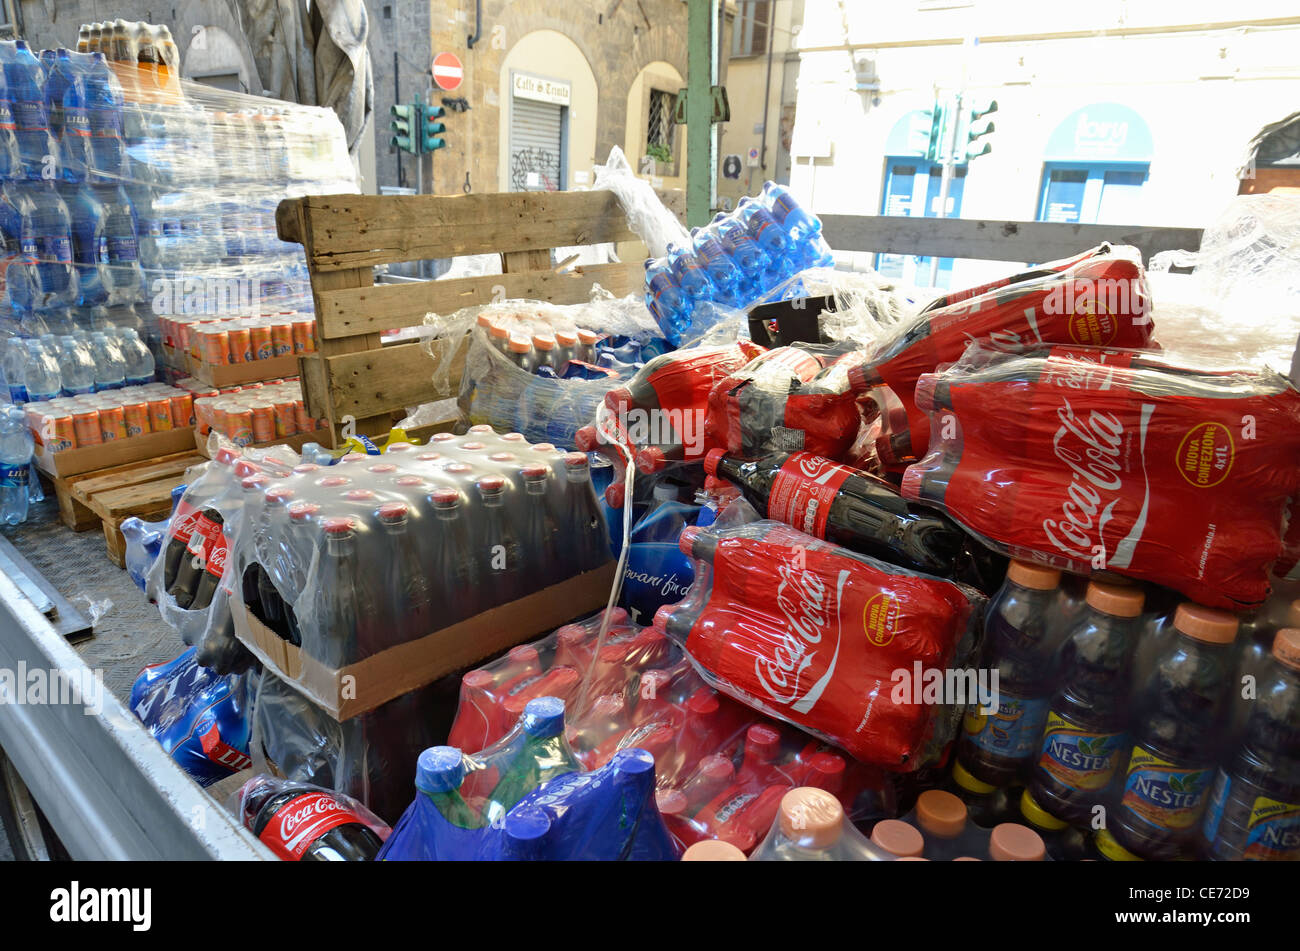 Les sodas sur le camion en cours de déchargement, Florence, Toscane, Italie Banque D'Images